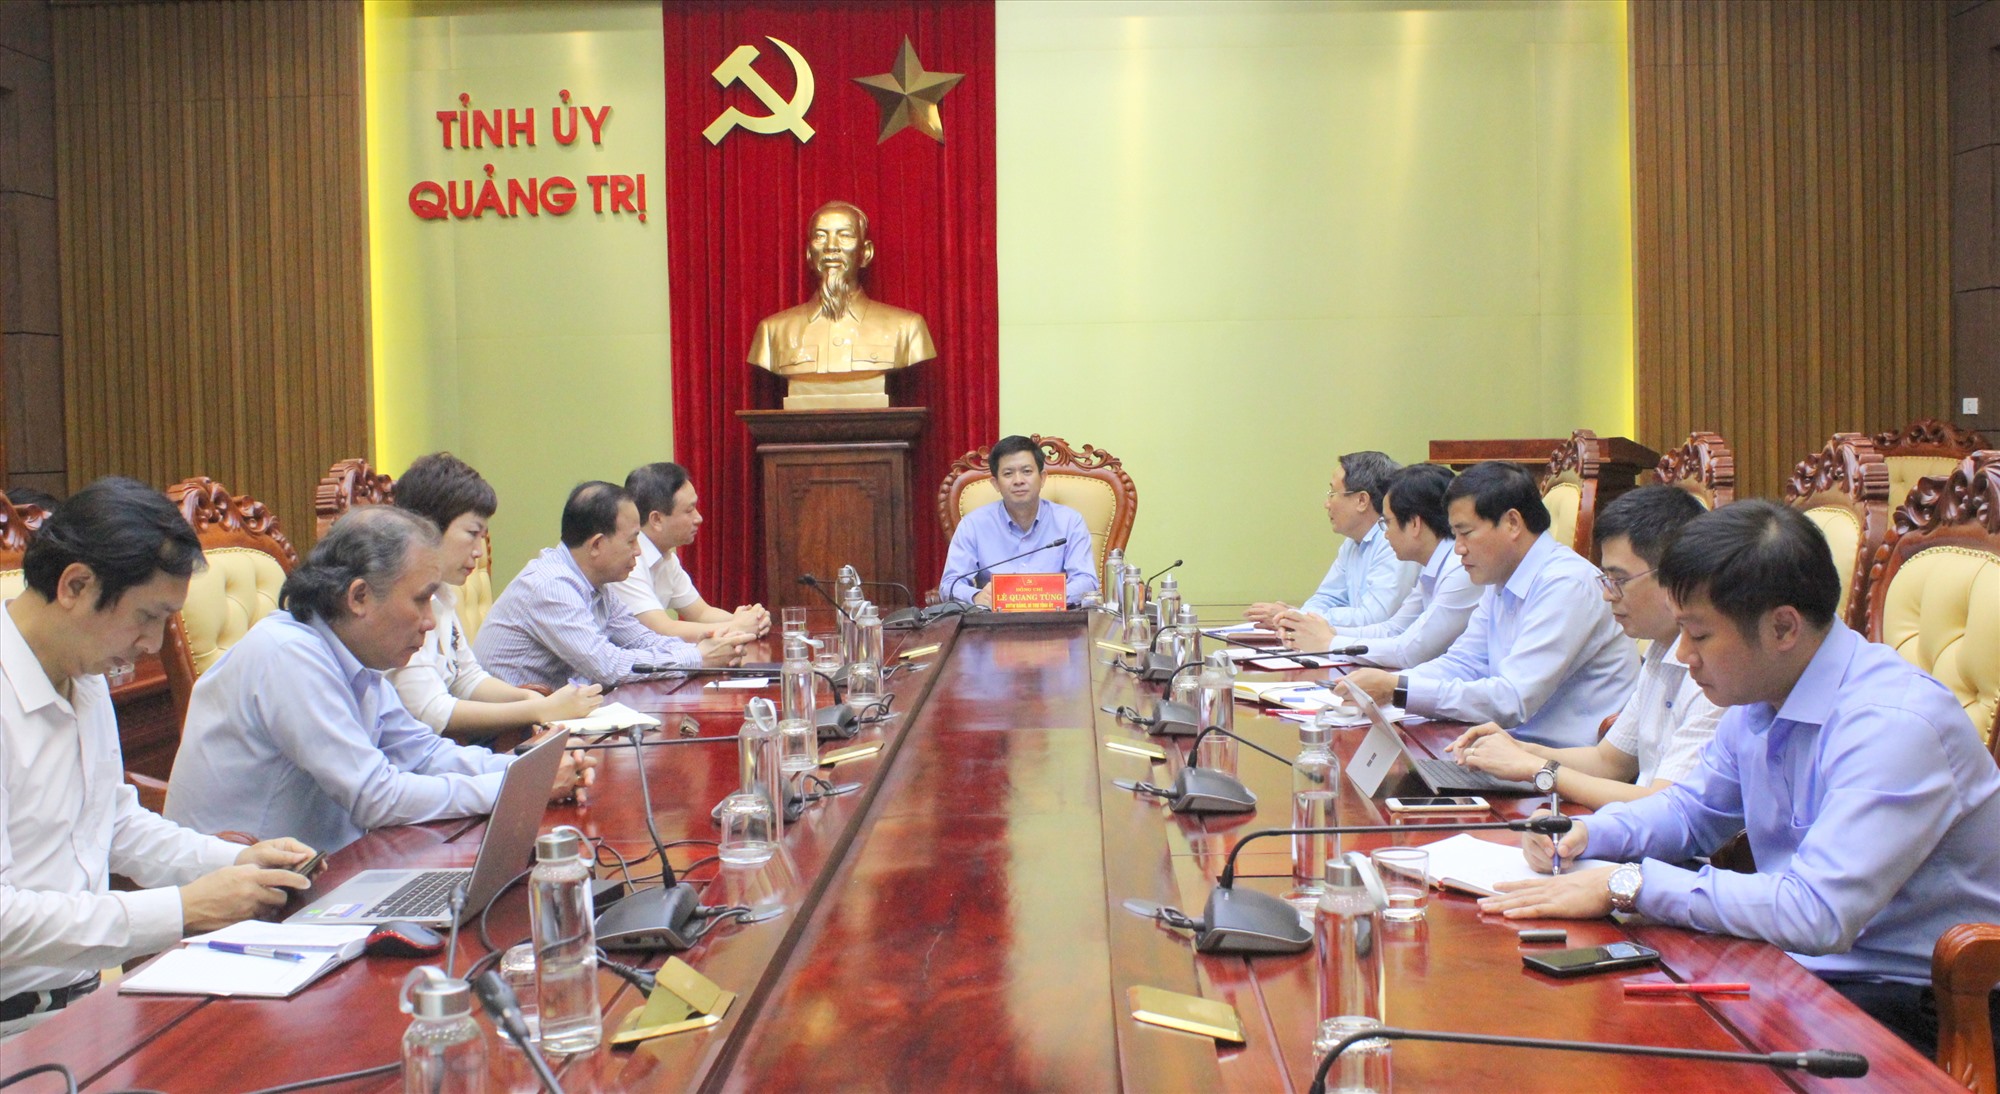 Bí thư Tỉnh ủy Lê Quang Tùng cho biết sẽ tạo điều kiện thuận lợi để các doanh nghiệp quan tâm đầu tư các dự án trọng điểm mang tính động lực vào Quảng Trị - Ảnh: K.S